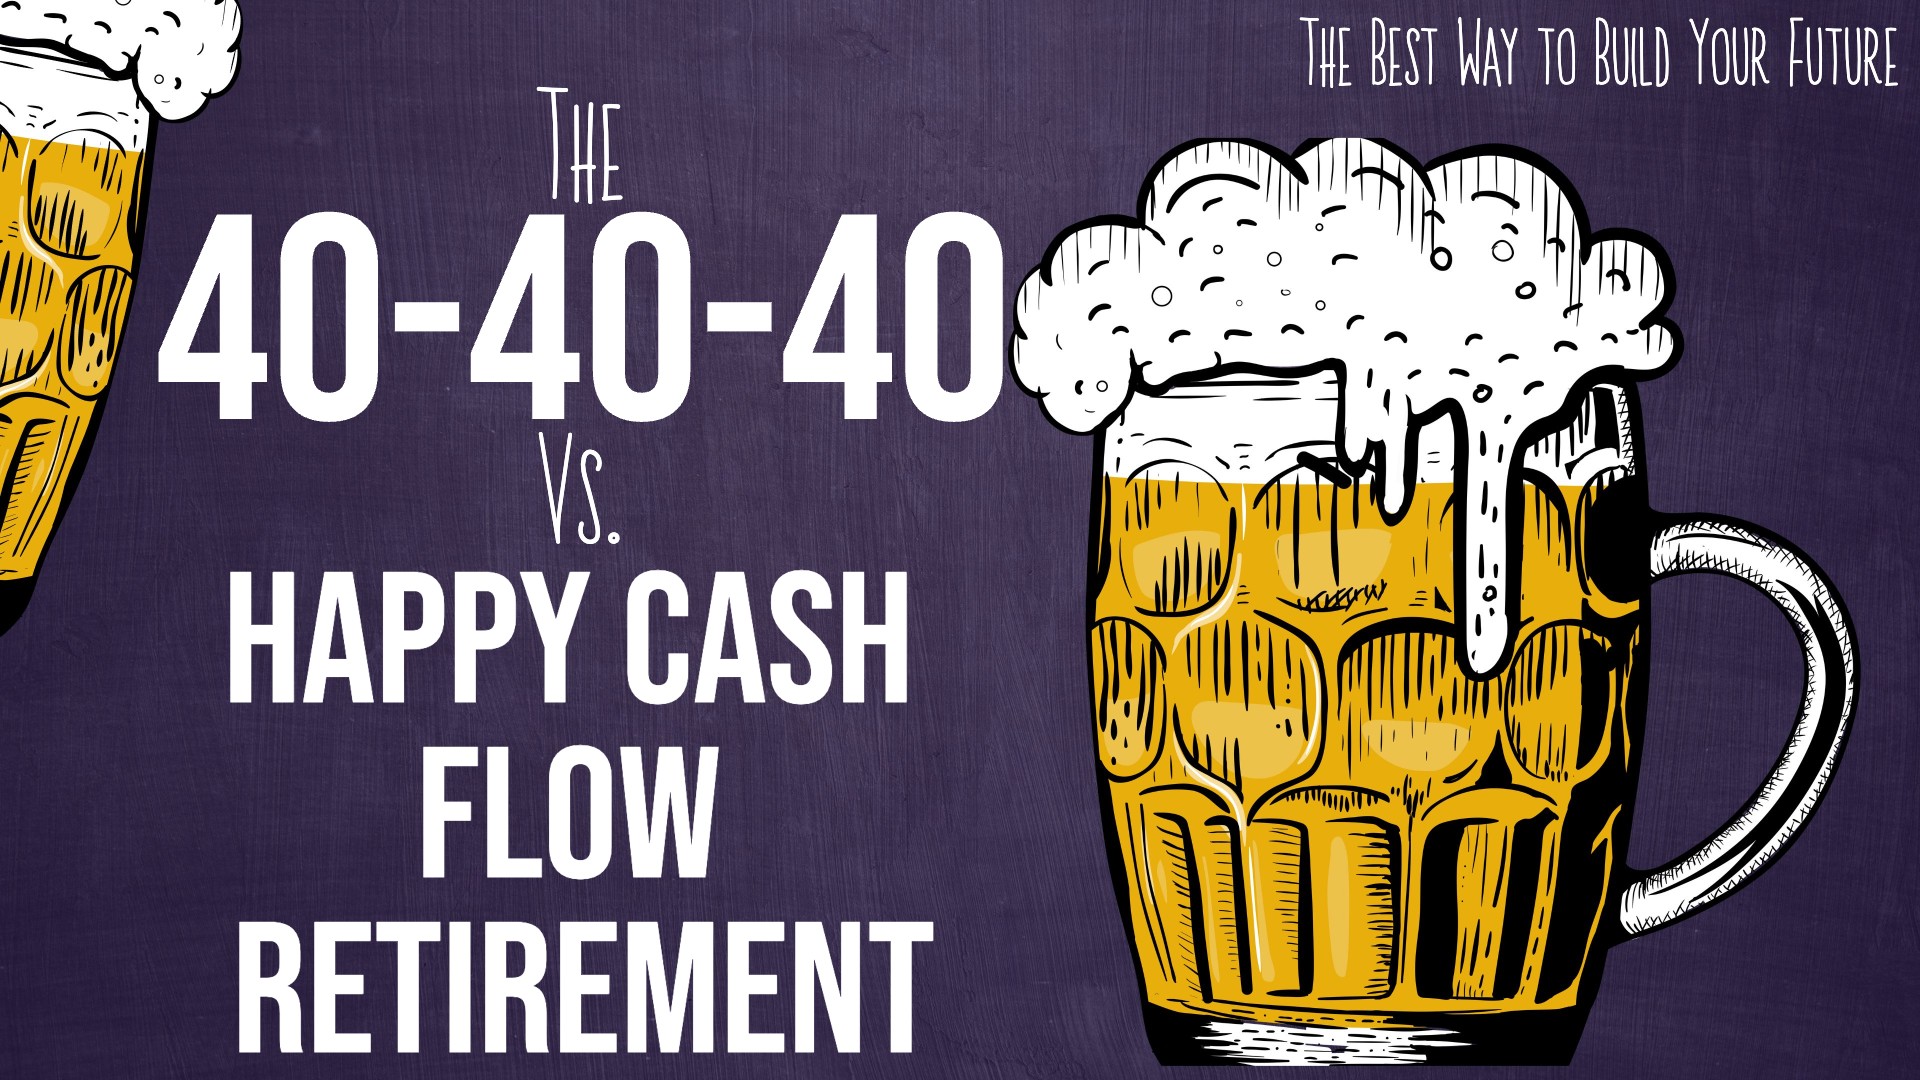 The 40-40-40 Plan vs Happy Cash Flow Retirement